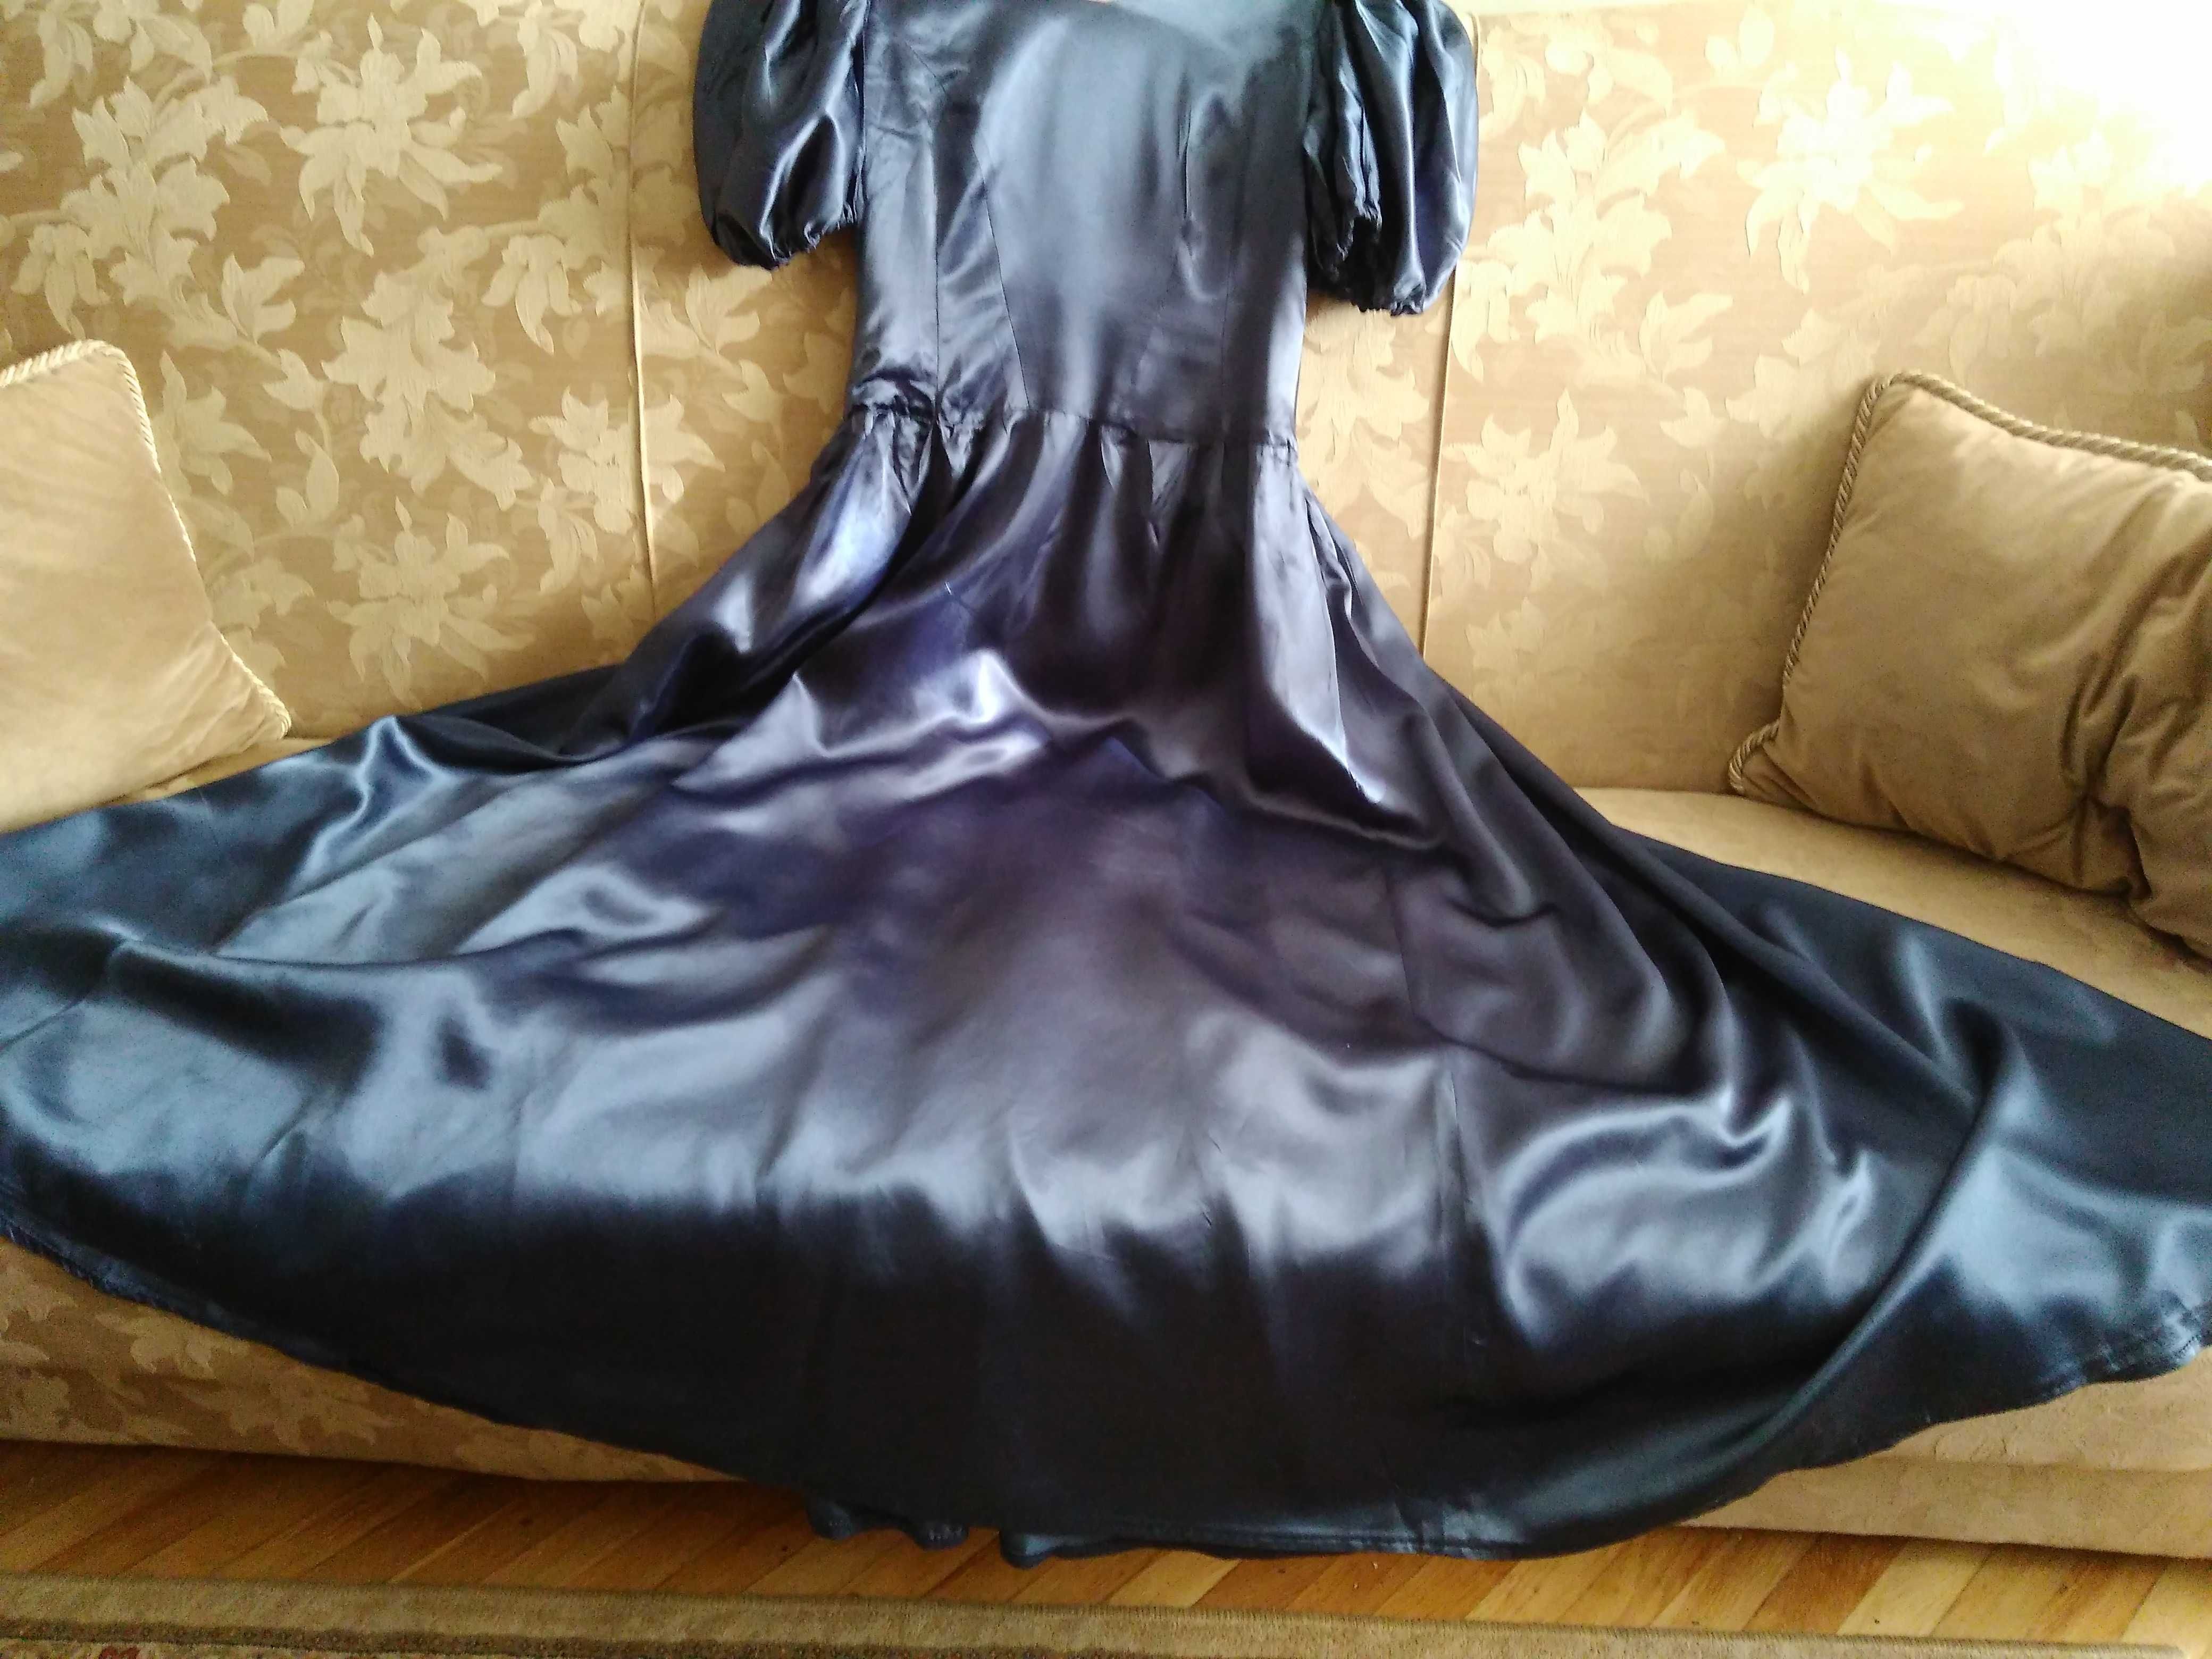 piękna suknia z atłasu szyta na zamówienie - proszę czytać opis